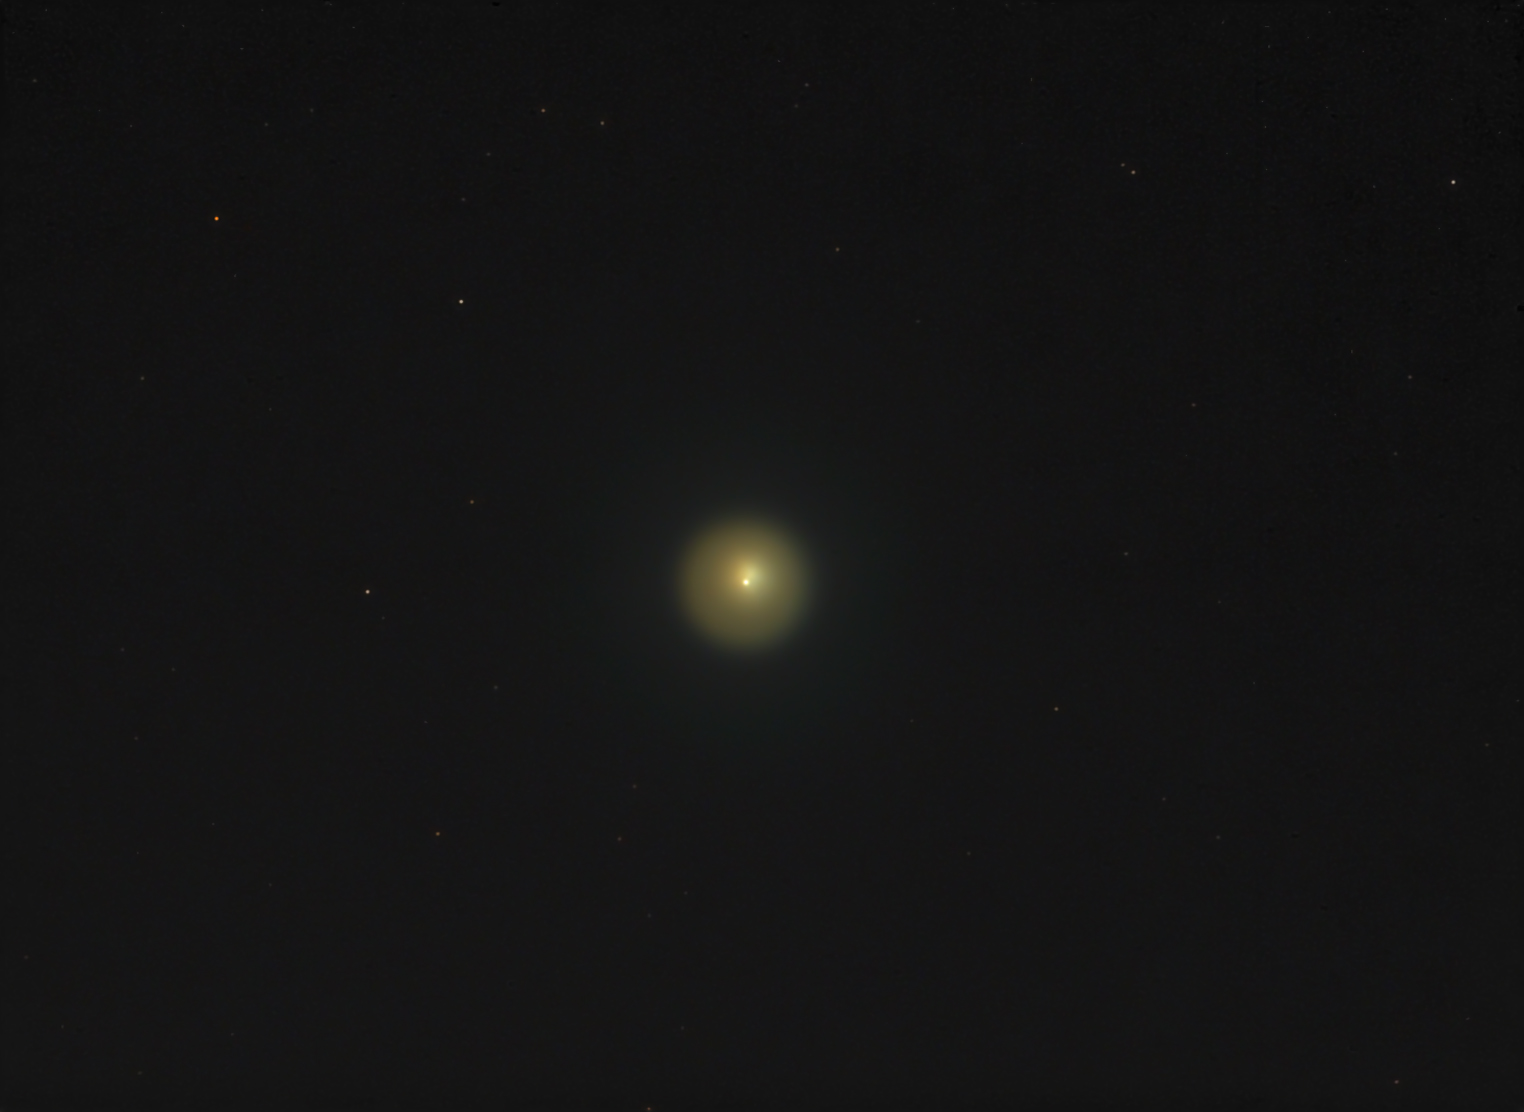 Vid v teleskop na vspyhnuvshuyu kometu Holmsa